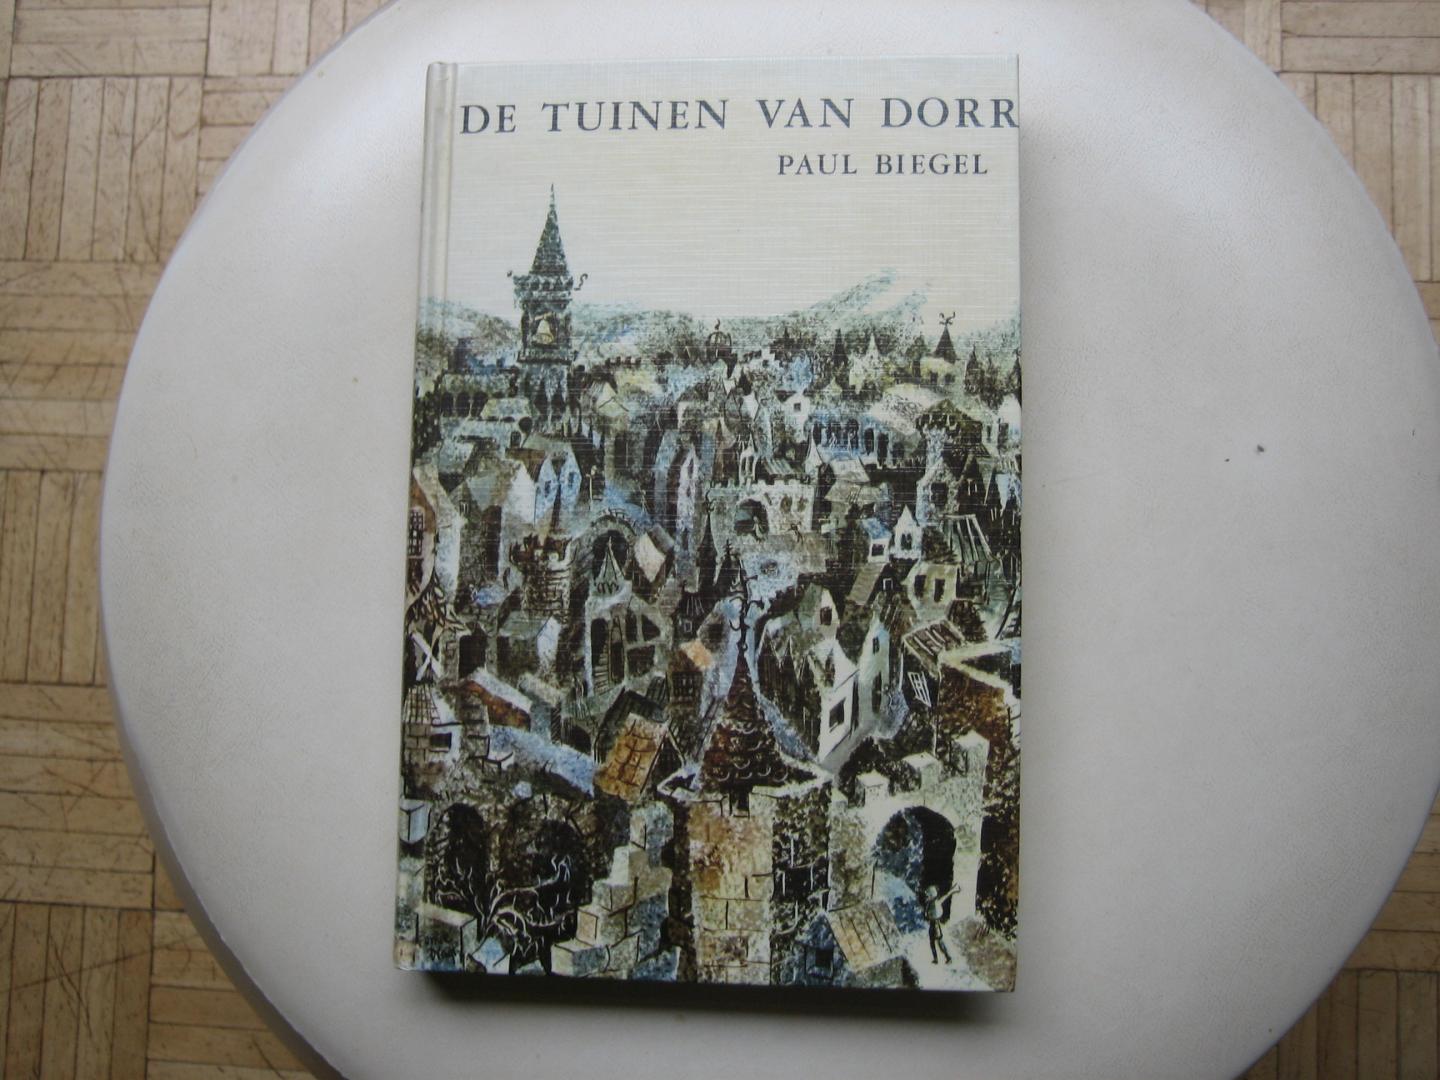 Paul Biegel - De Tuinen van Dorr / Met tekeningen van Tonke Dragt